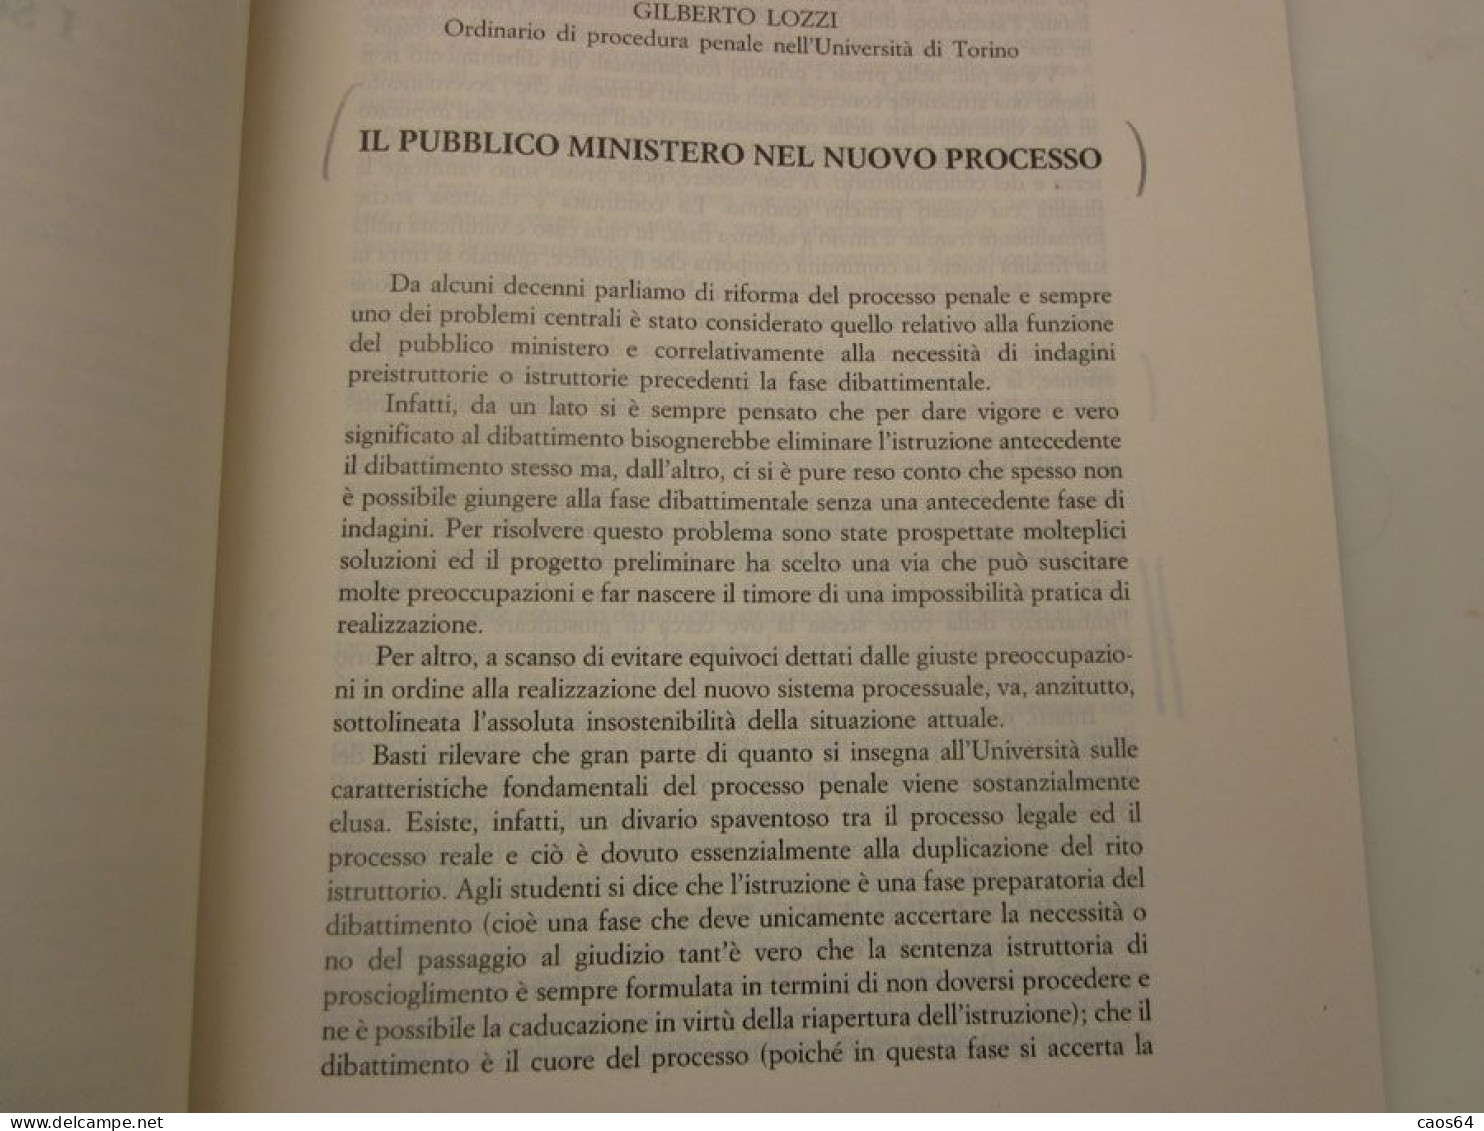 Profili del nuovo processo penale Mario Garavoglia CEDAM 1988